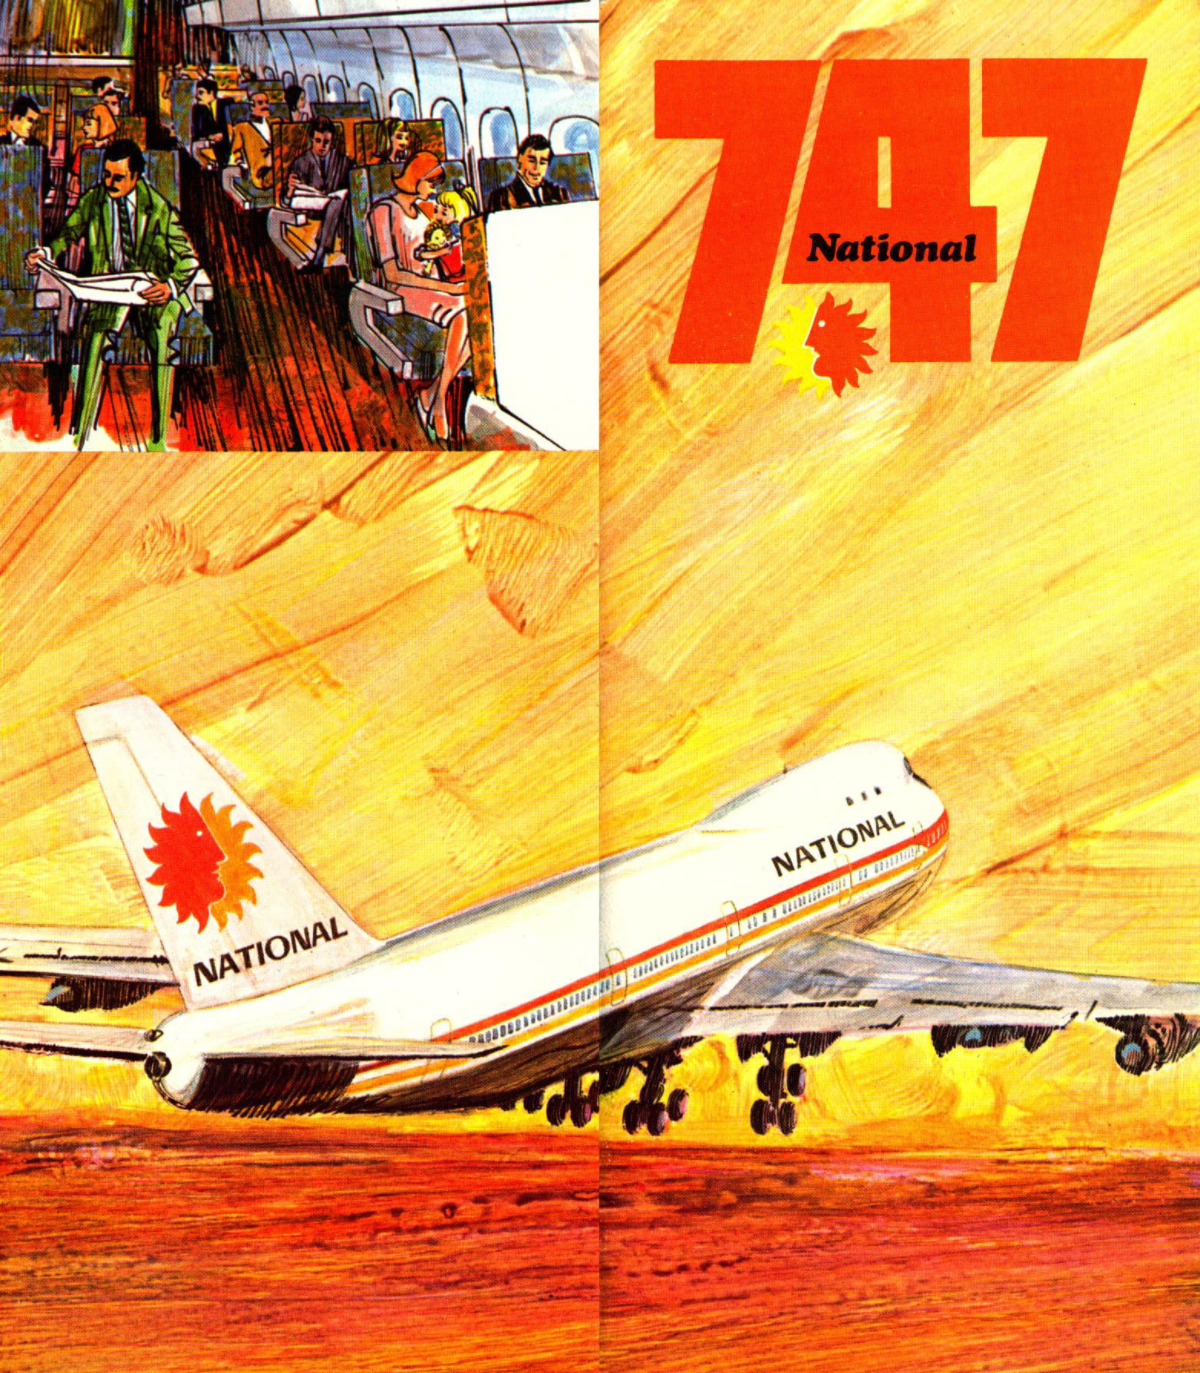 22 Января 1970 года: Boeing 747 вылетает на свой первый регулярный рейс из Нью-Йорка в Лондон